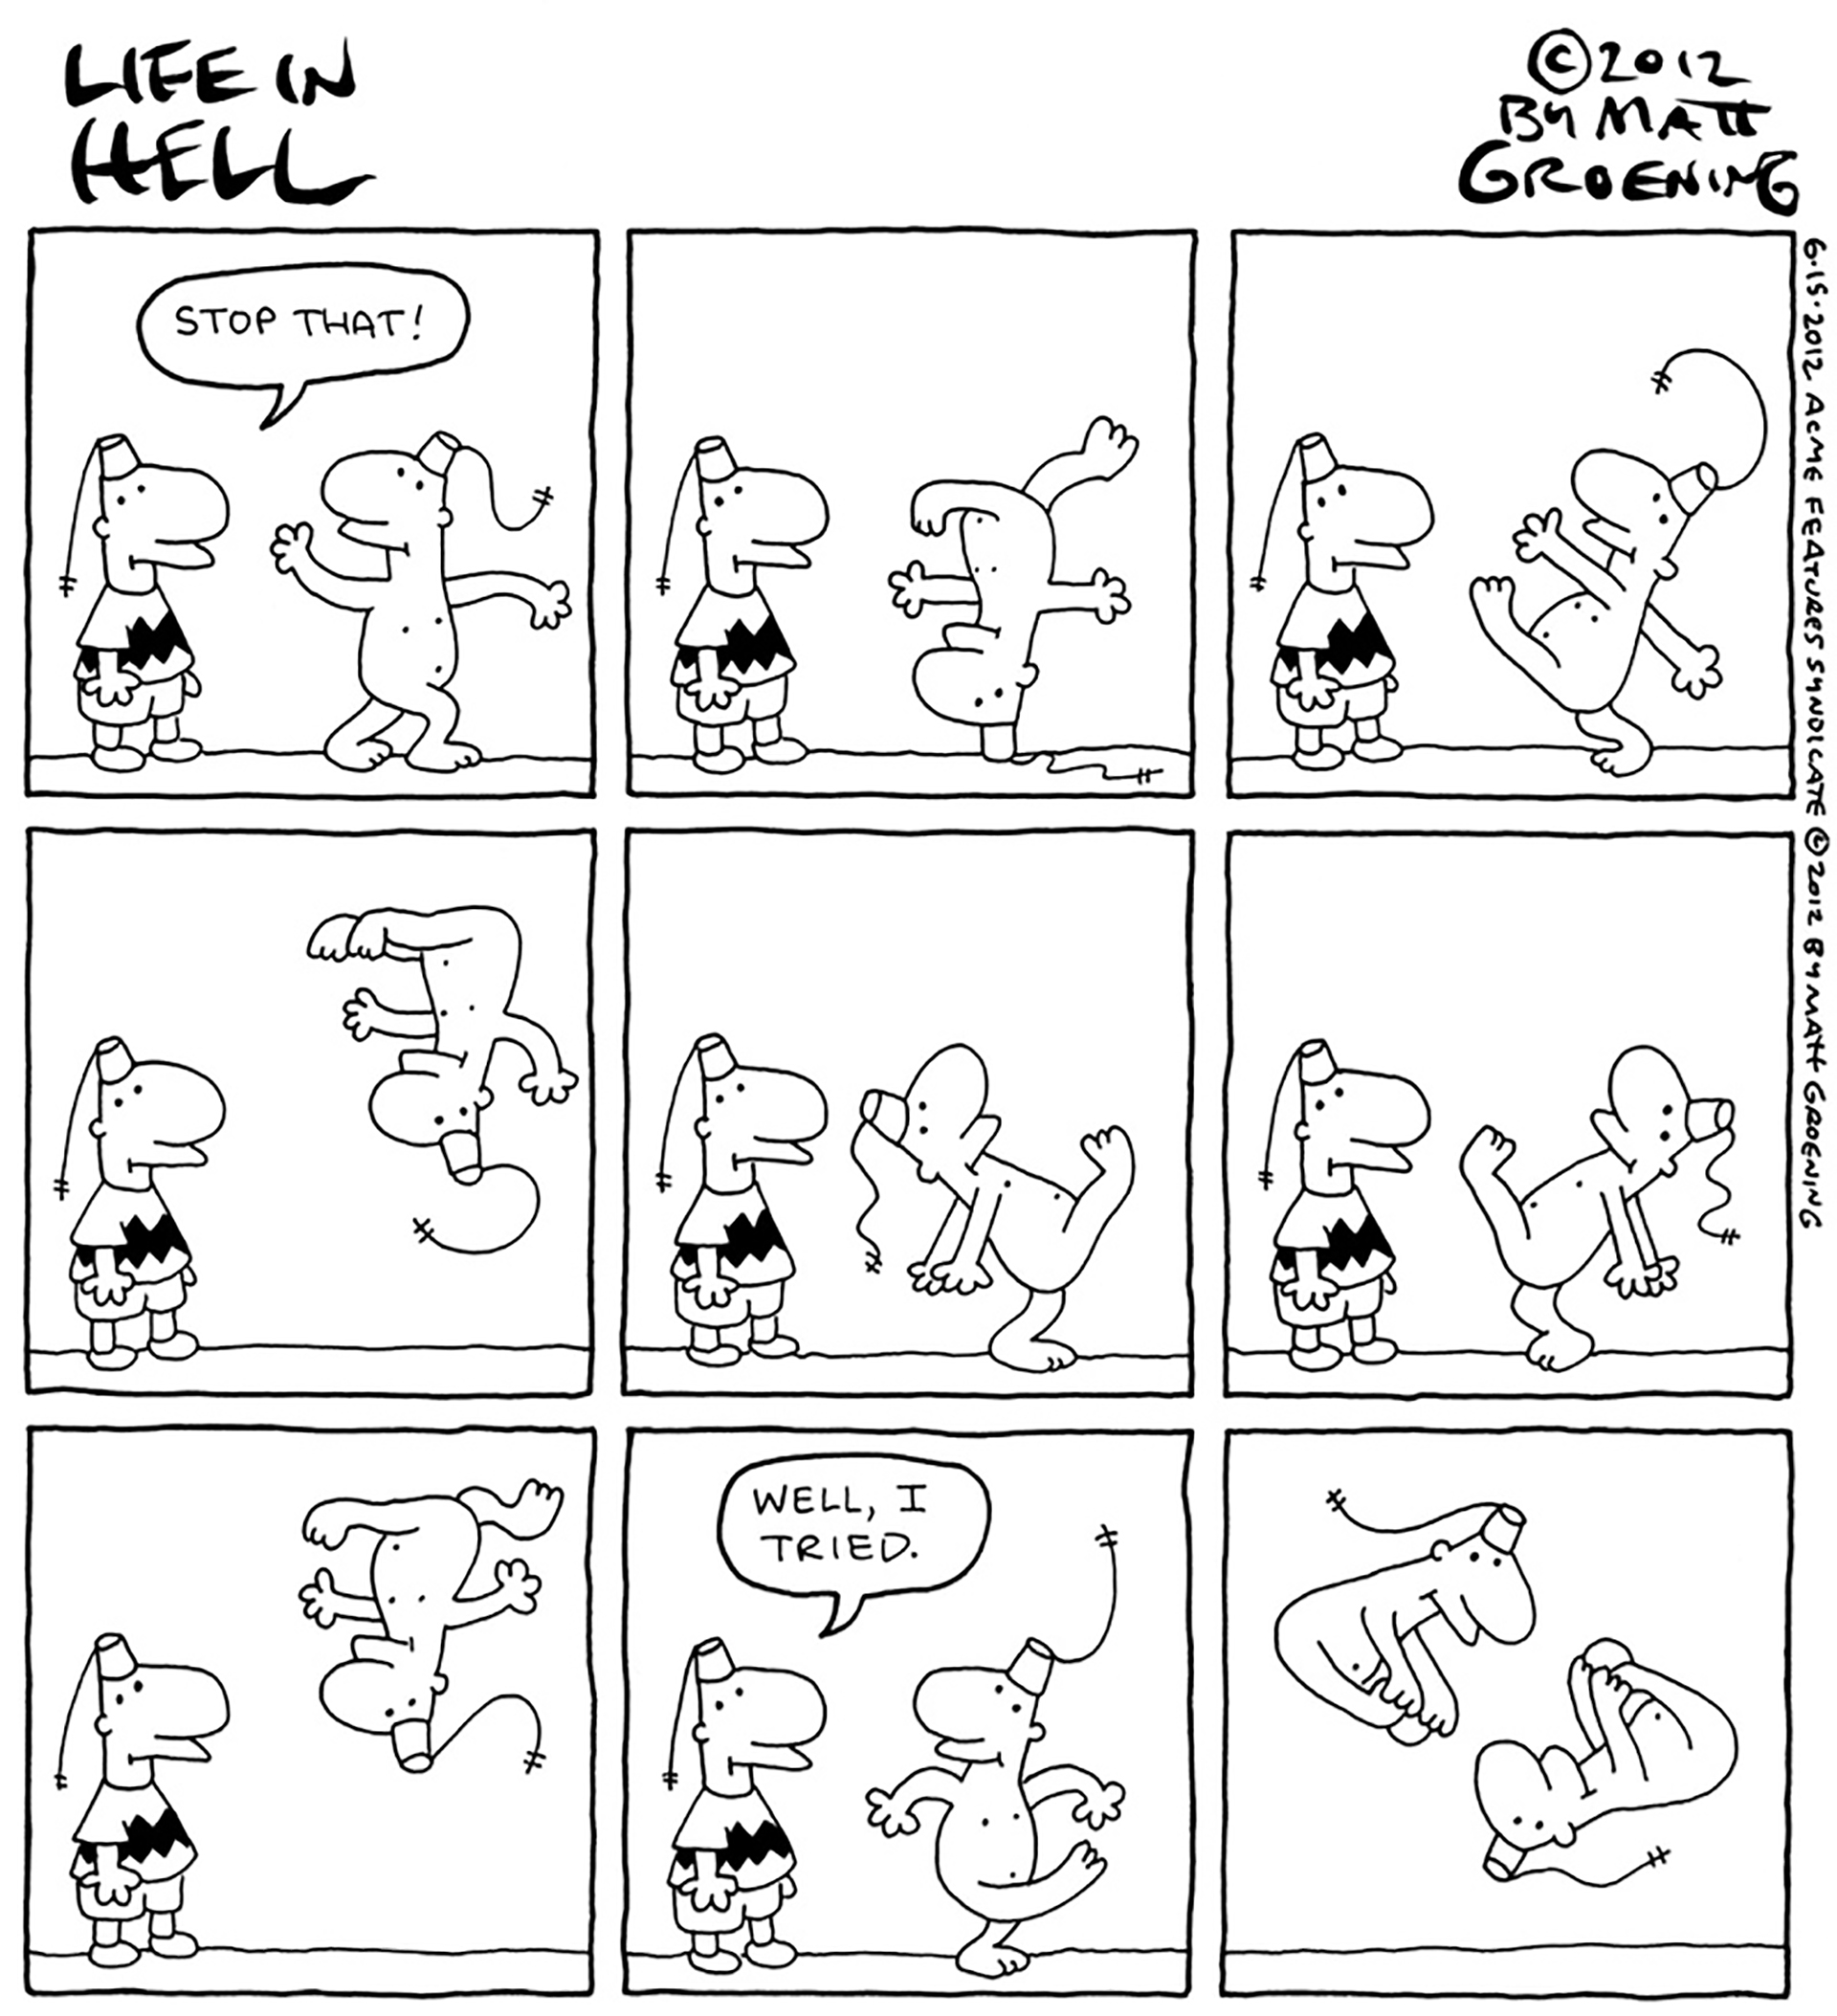 Life is Hell el comic de Matt Groening que se convirtió en su primer trabajo importante. Dibujó la tira hasta el año 2012